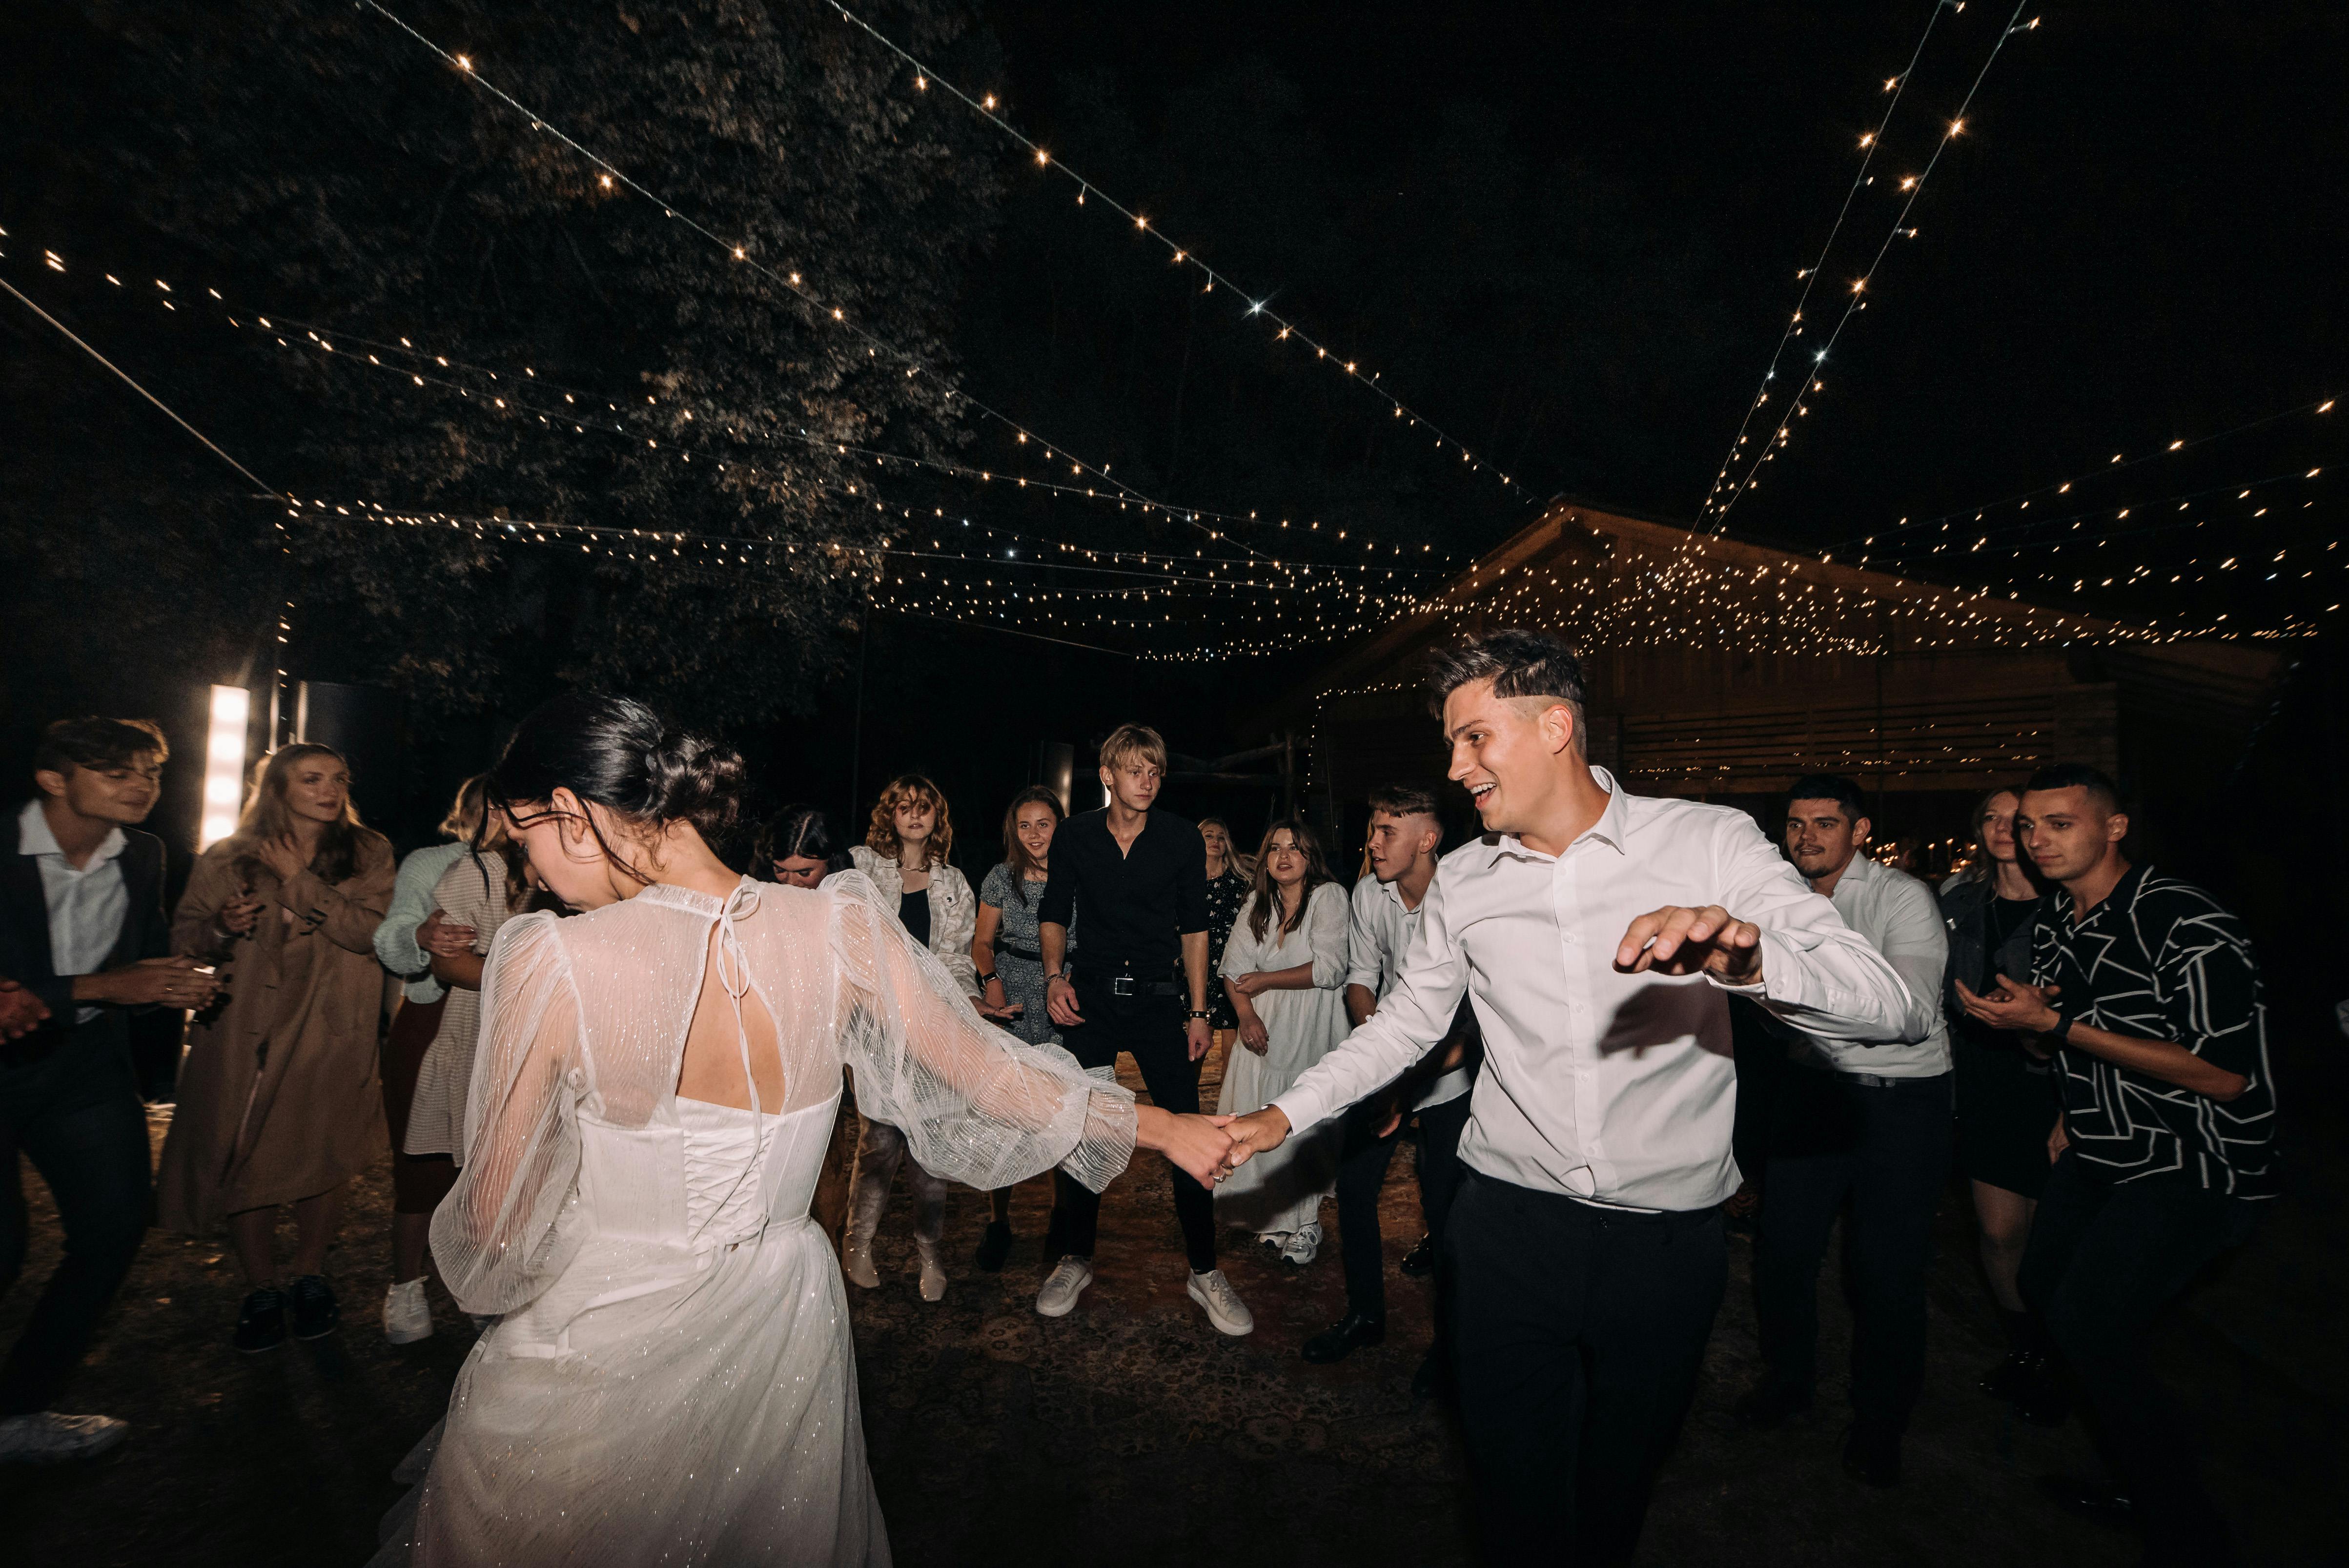 Un couple danse à son mariage sous le regard des invités | Source : Pexels